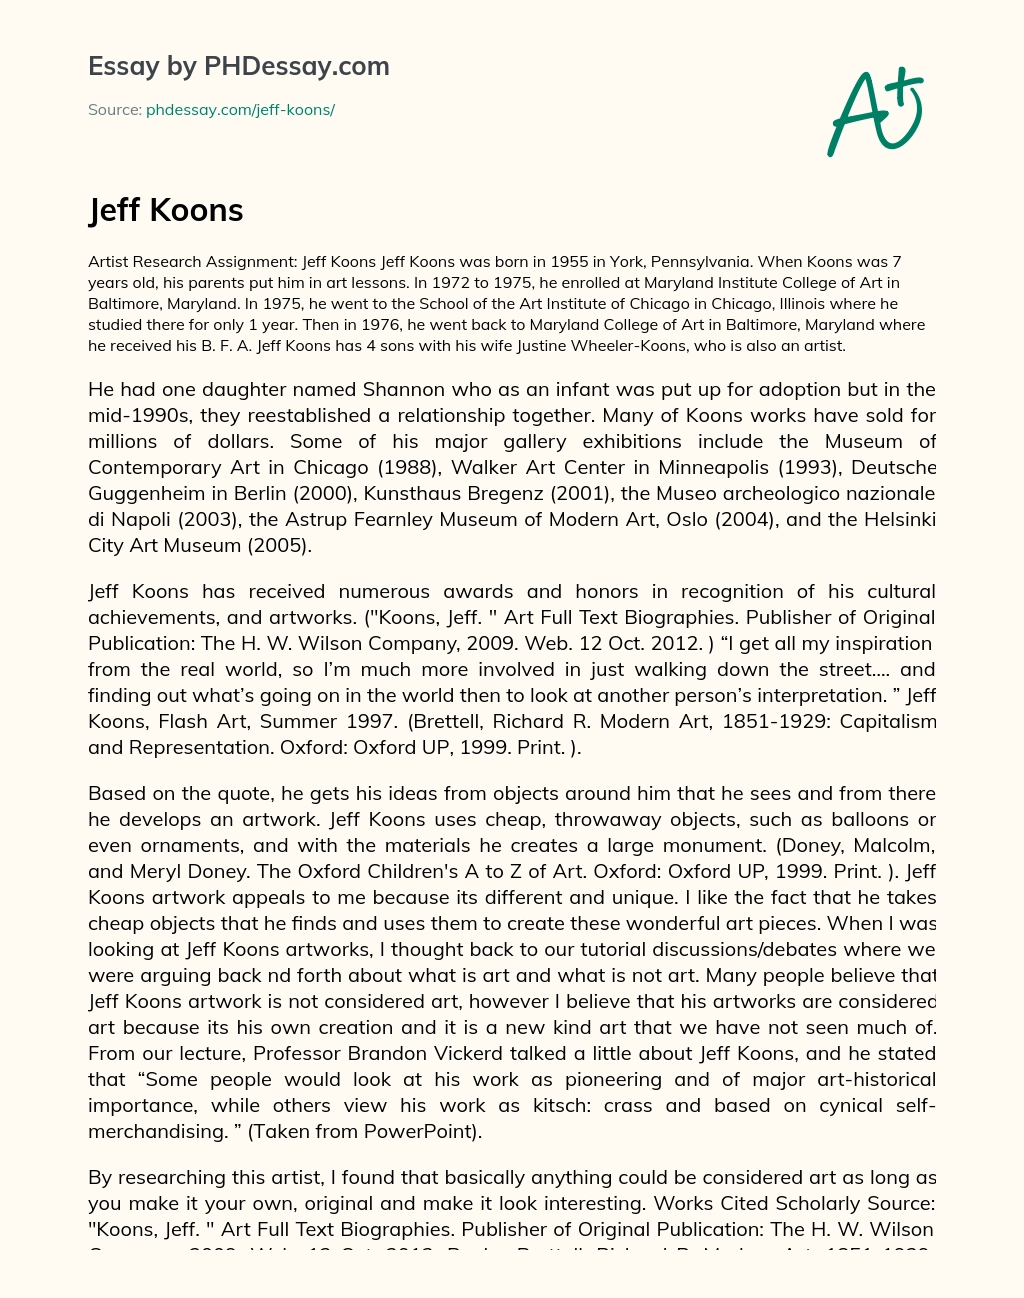 Jeff Koons essay